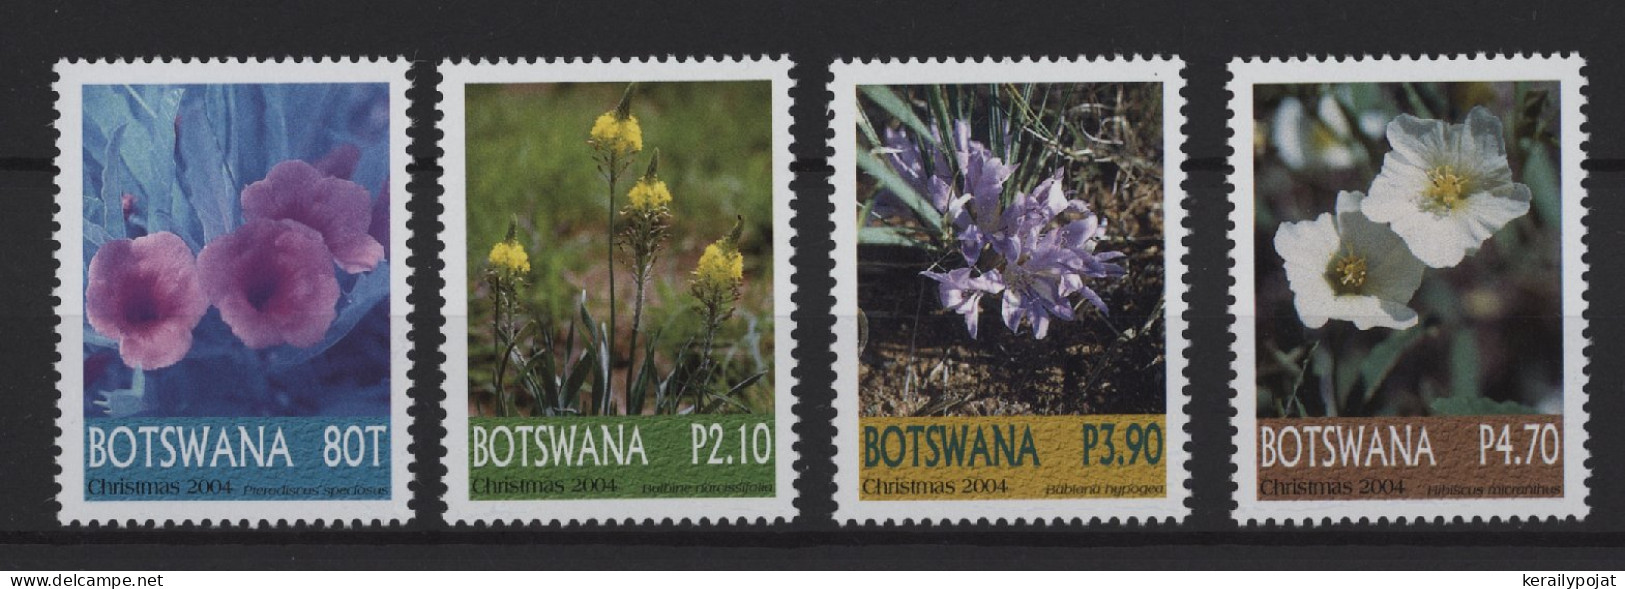 Botswana - 2004 Christmas Flowers MNH__(TH-25261) - Botswana (1966-...)